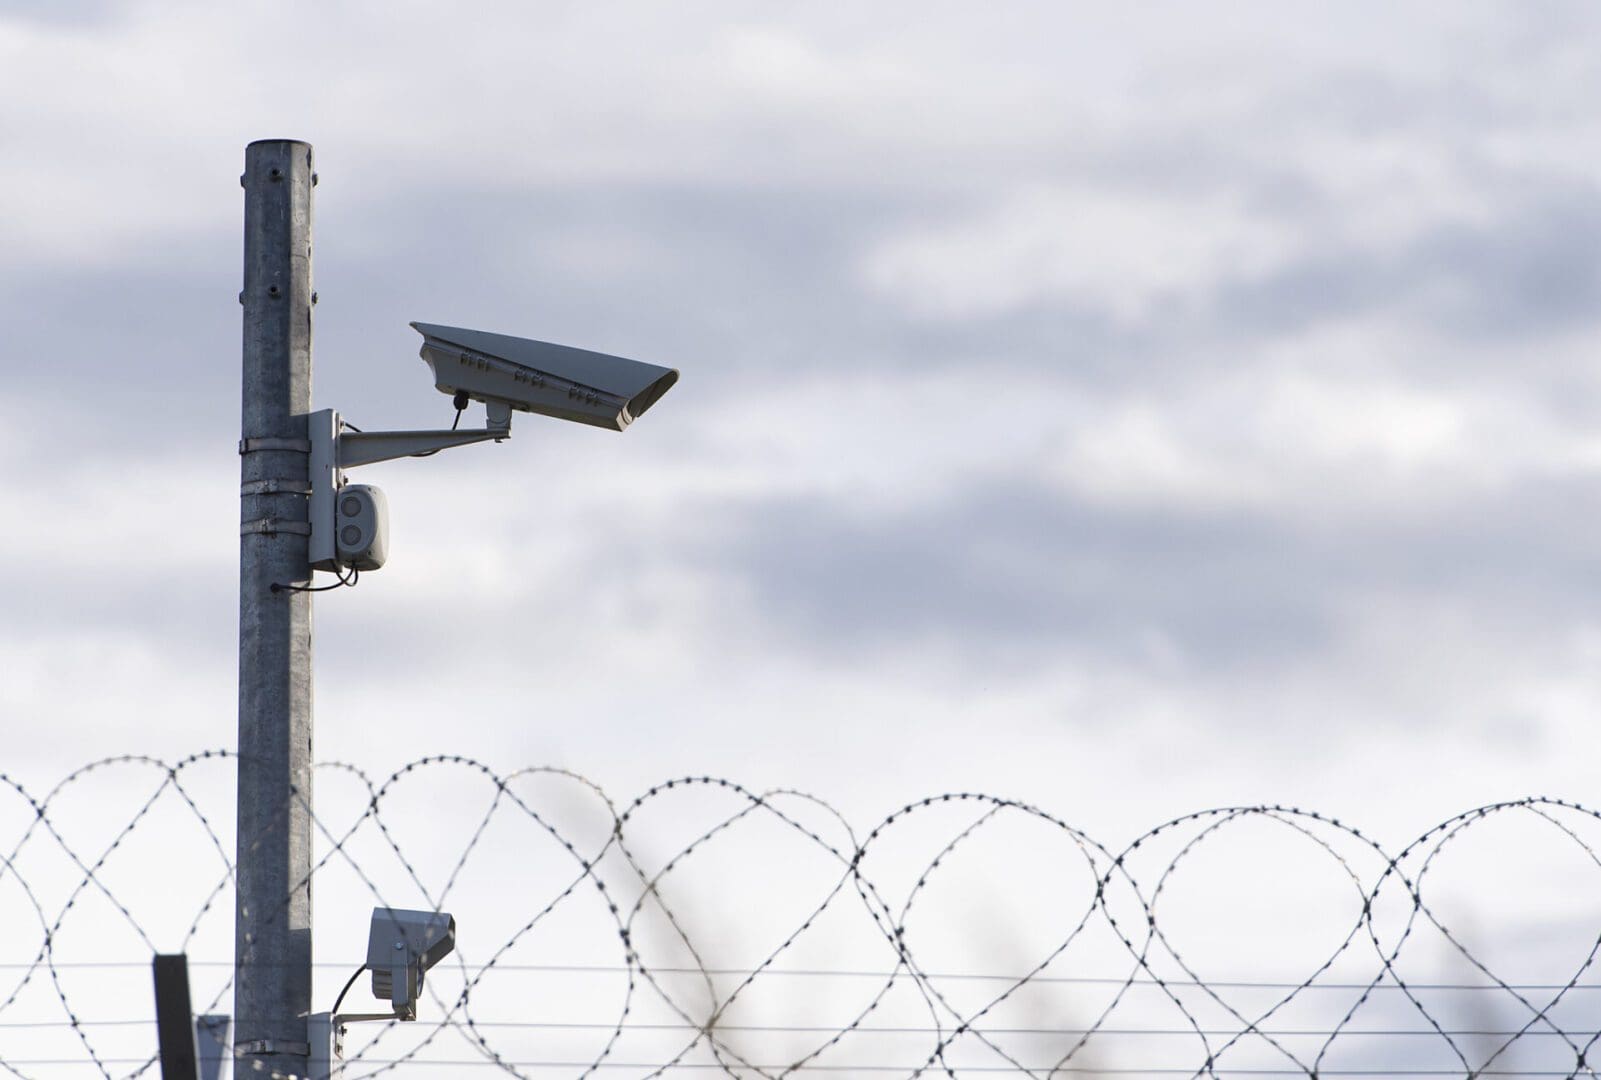 Surveillance Camera and barbed wire, border, prison